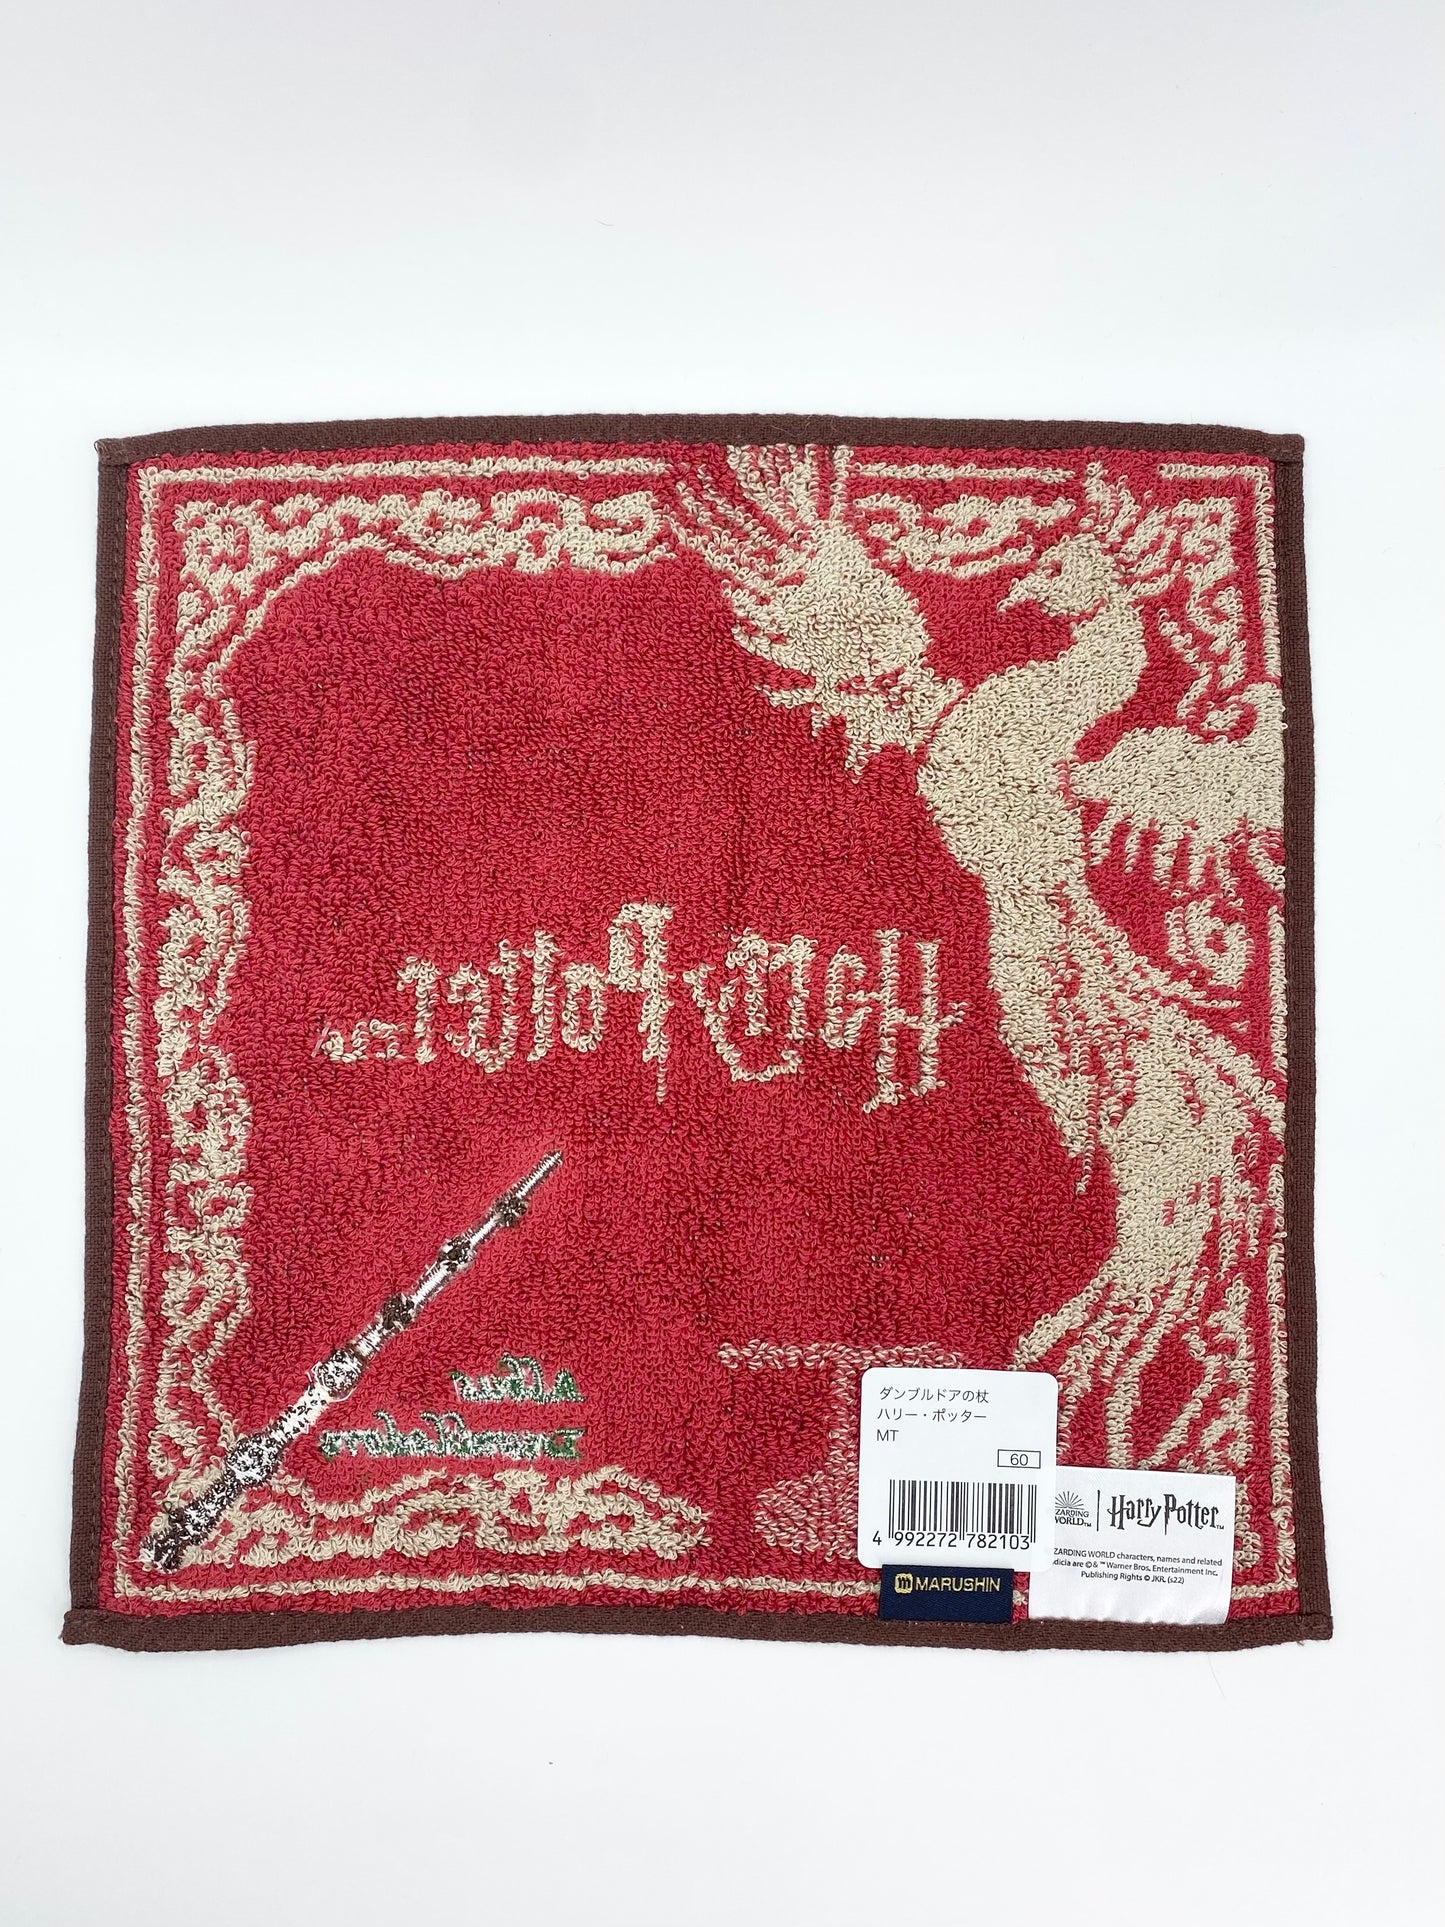 Harry Potter Album Dumbledore Face Cloth / Flannel